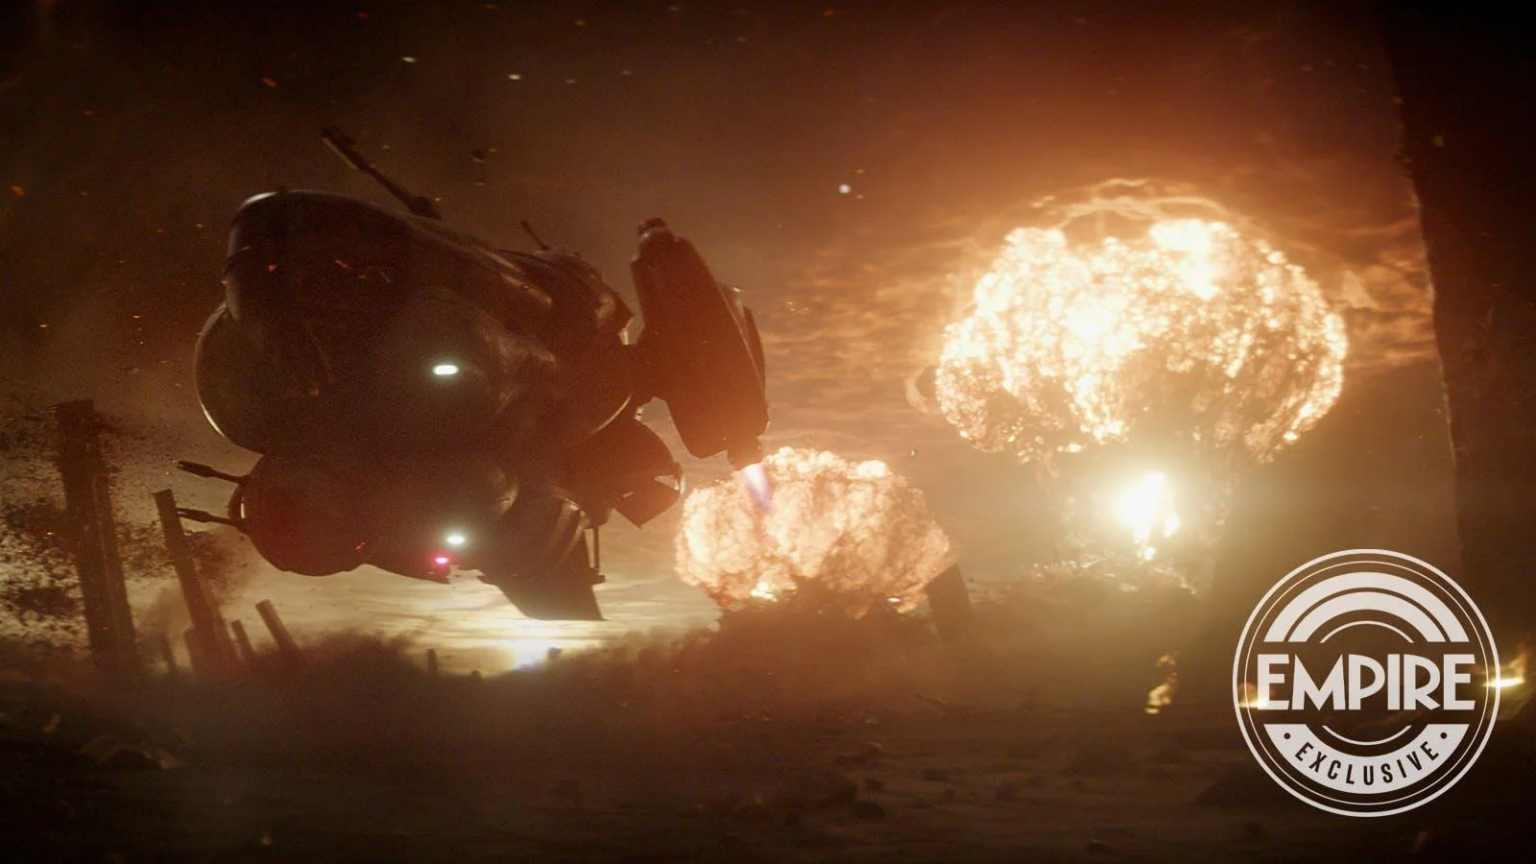 Rebel Moon: Ficção científica de Zack Snyder ganha data de estreia na  Netflix